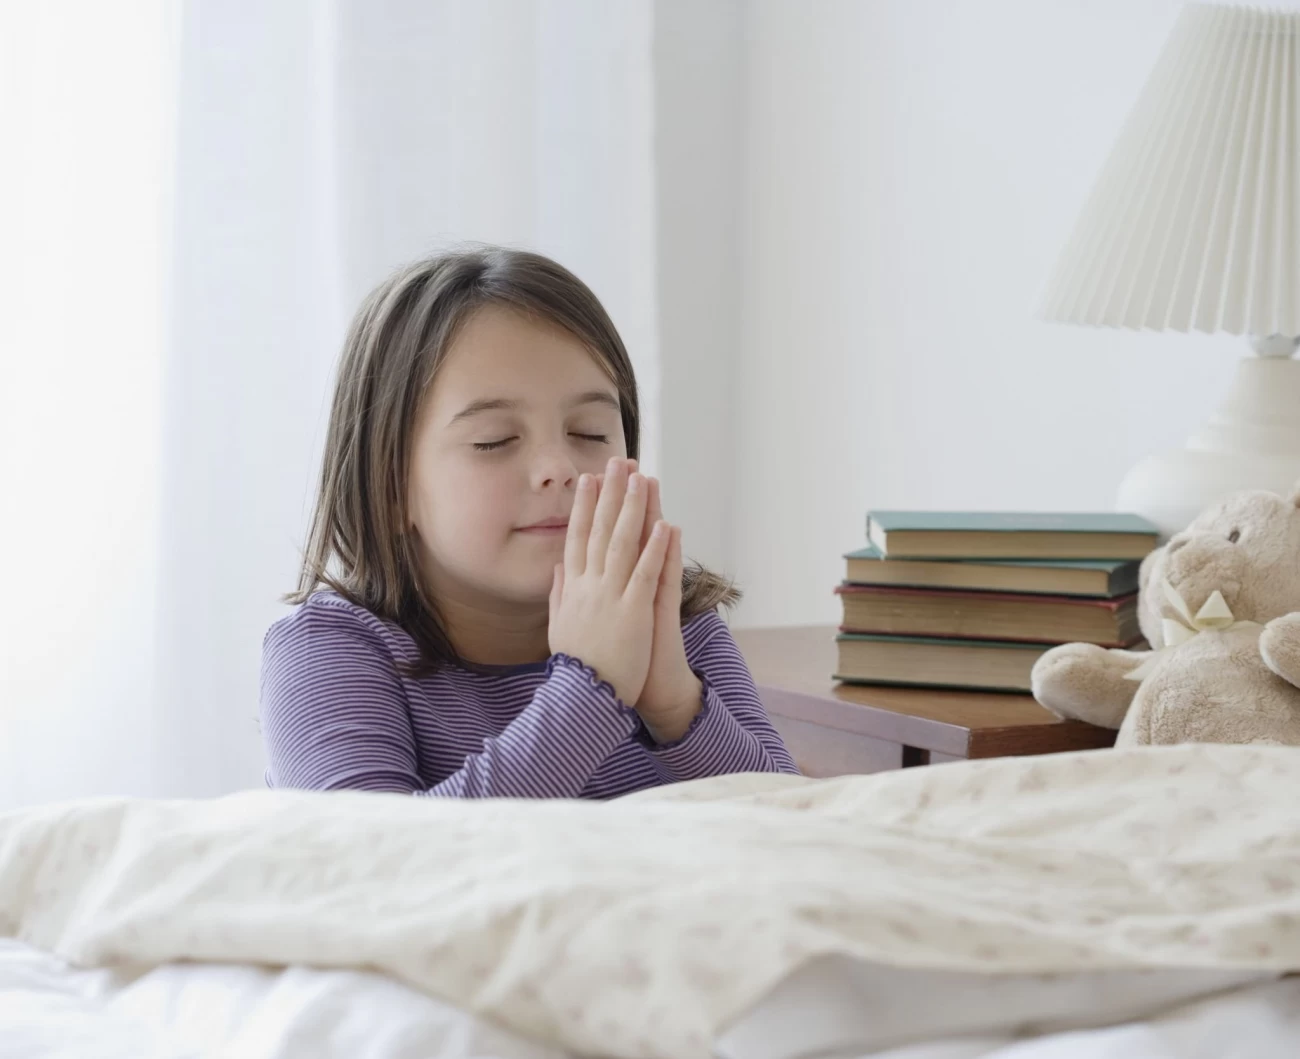 راهکارهای ایجاد علاقه مندی در فرزندان نسبت به عبادات